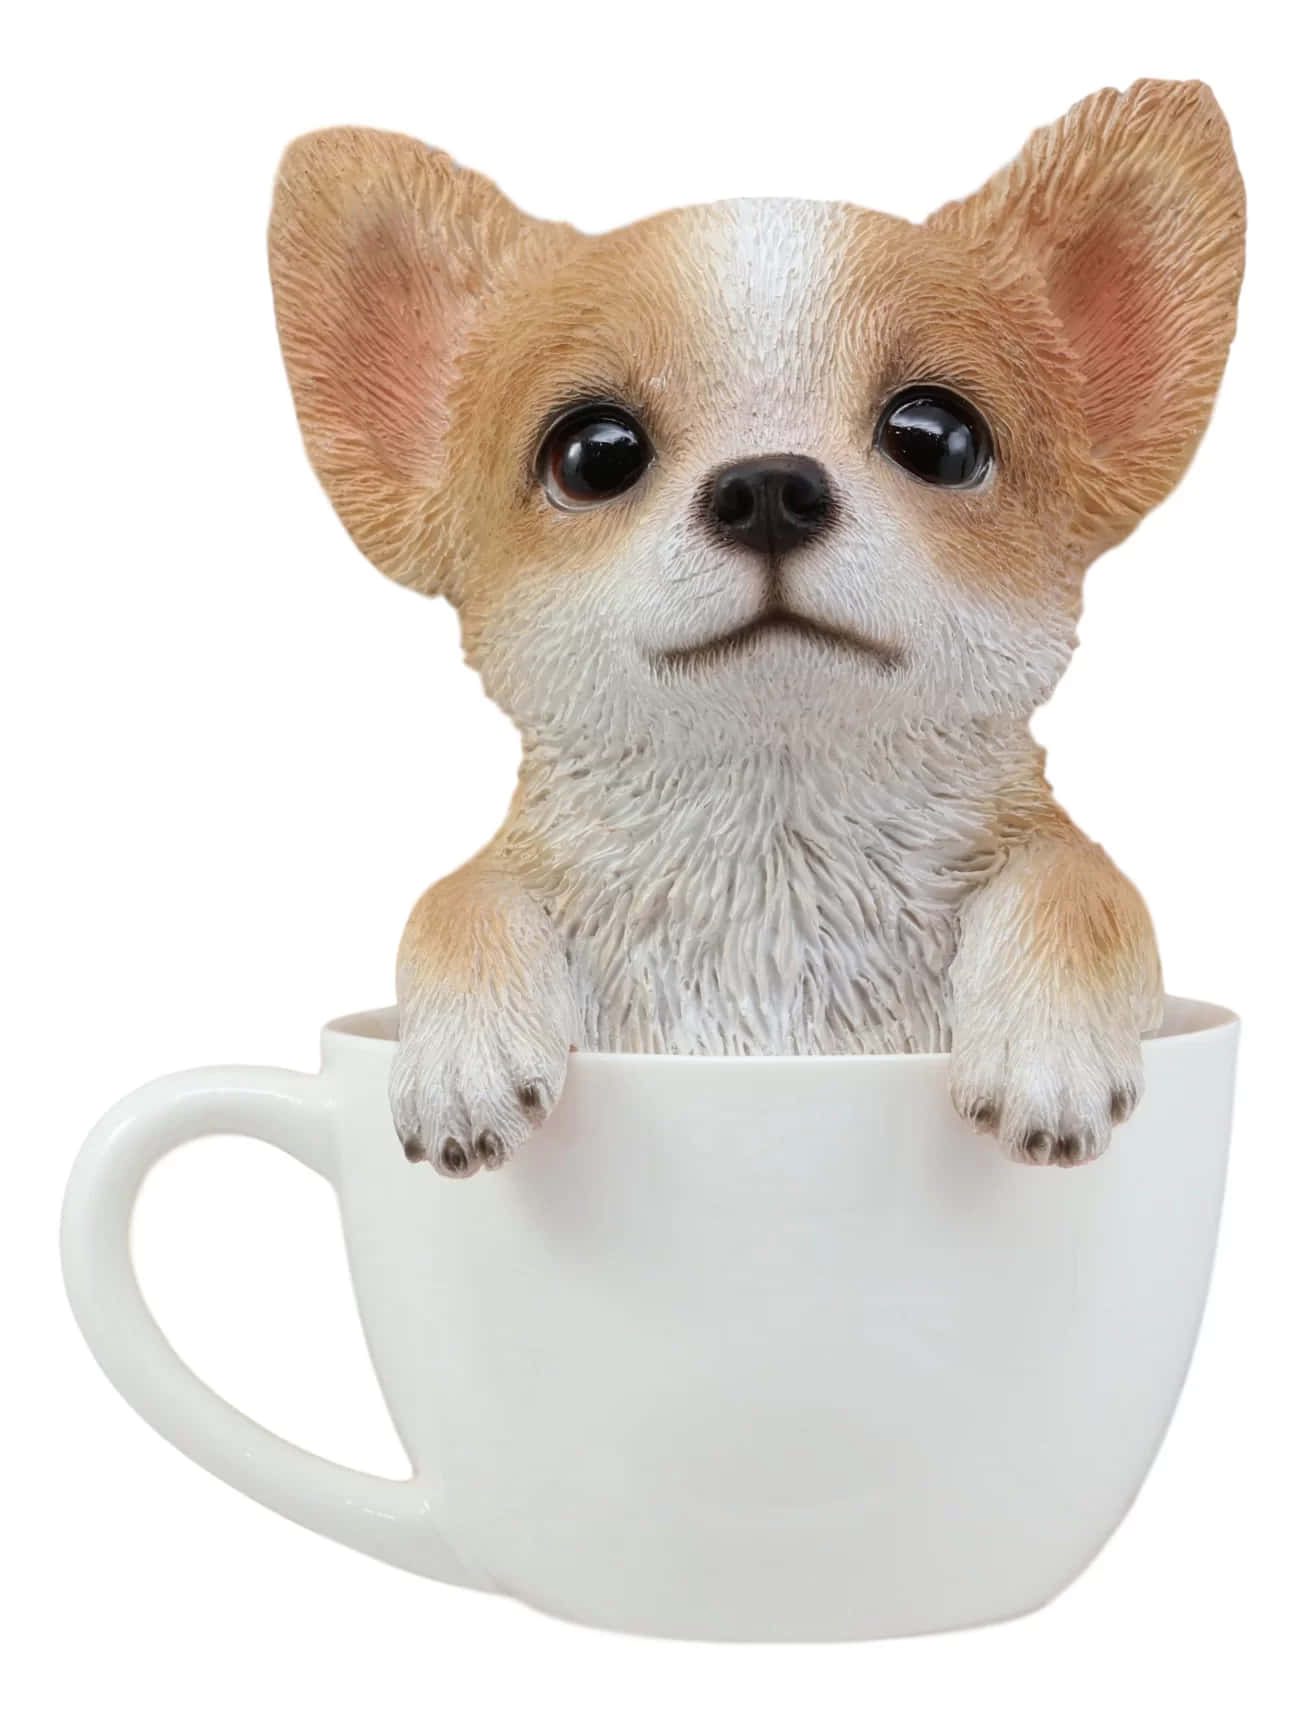 "A Cute Teacup Chihuahua"